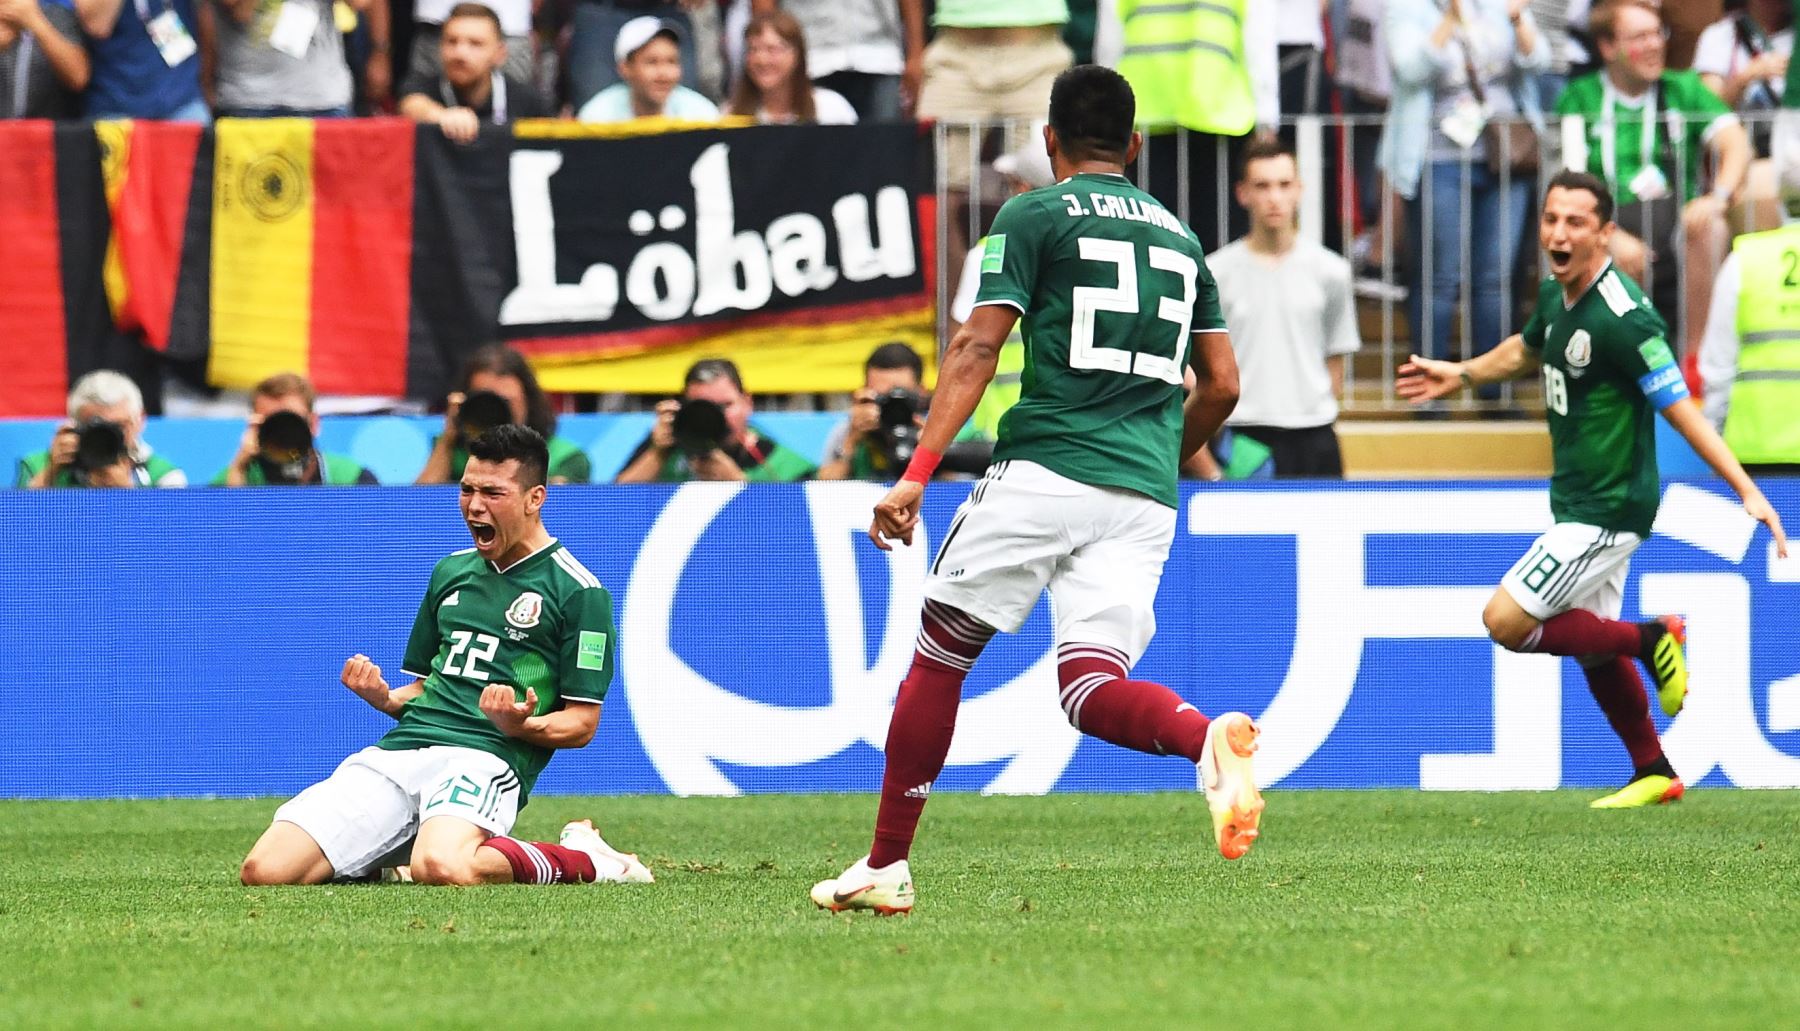 Hirving Lozano de México celebra con sus compañeros de equipo después de anotar el 1-0 en el partido de fútbol preliminar F Grupo Mundial F-2018 entre Alemania y México.Foto:EFE